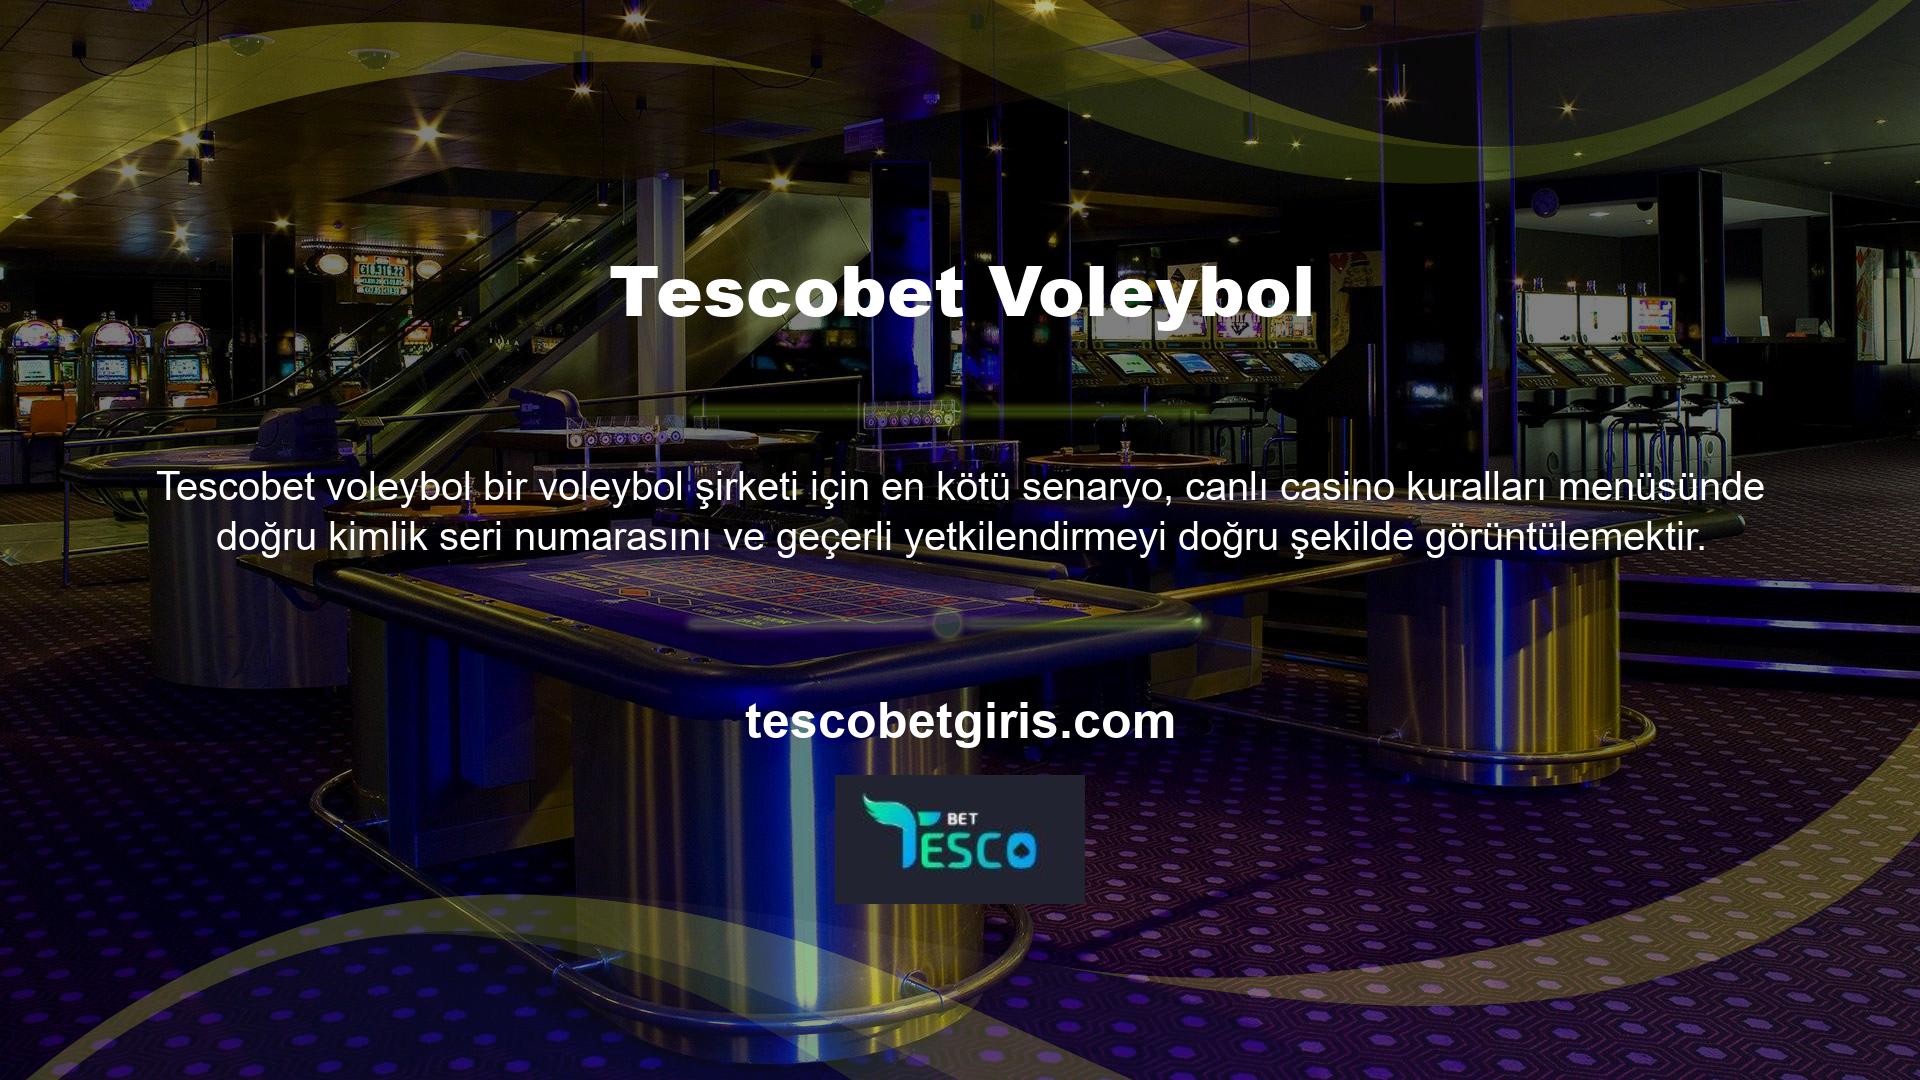 Sitenin en üstünde Tescobet Voleybol'un mükemmel kullanıcı destek ekibi bulunmaktadır